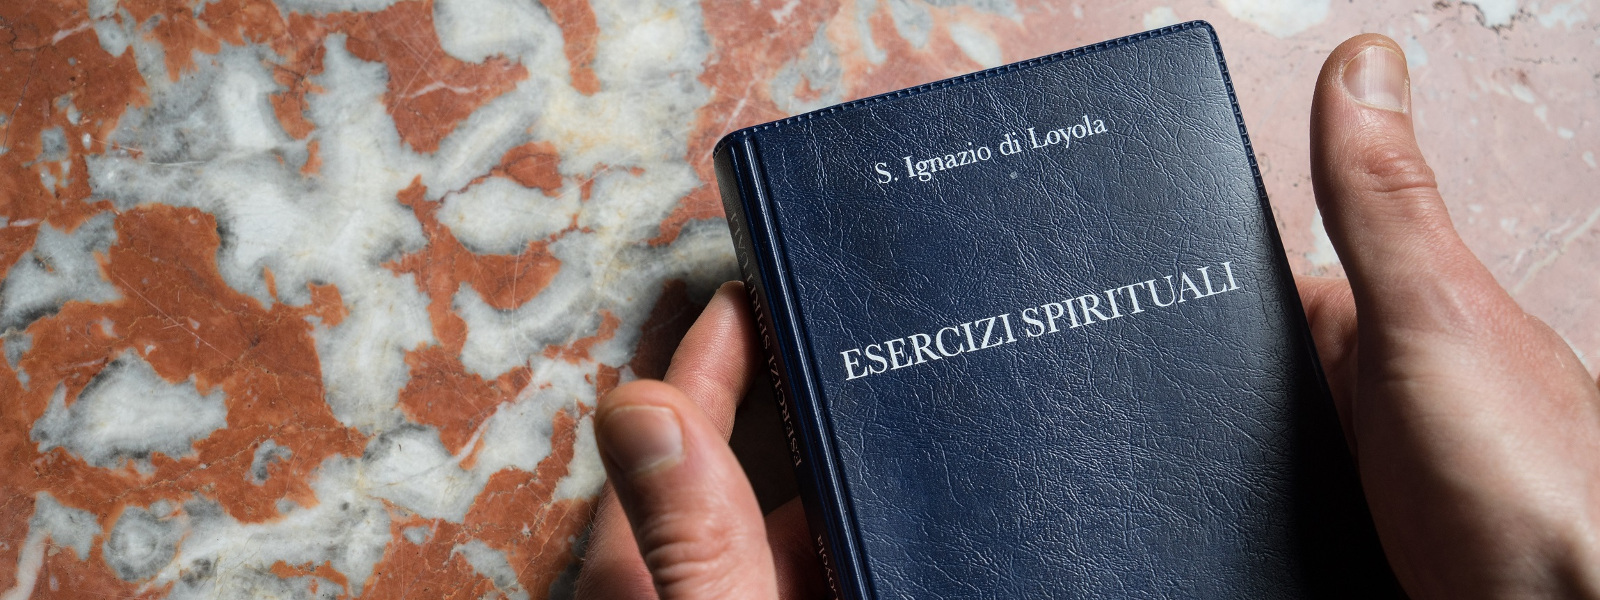 Copertina del libro degli Esercizi Spirituali di sant'Ignazio - Accompagnamento spirituale presso la parrocchia di san Saba, Roma